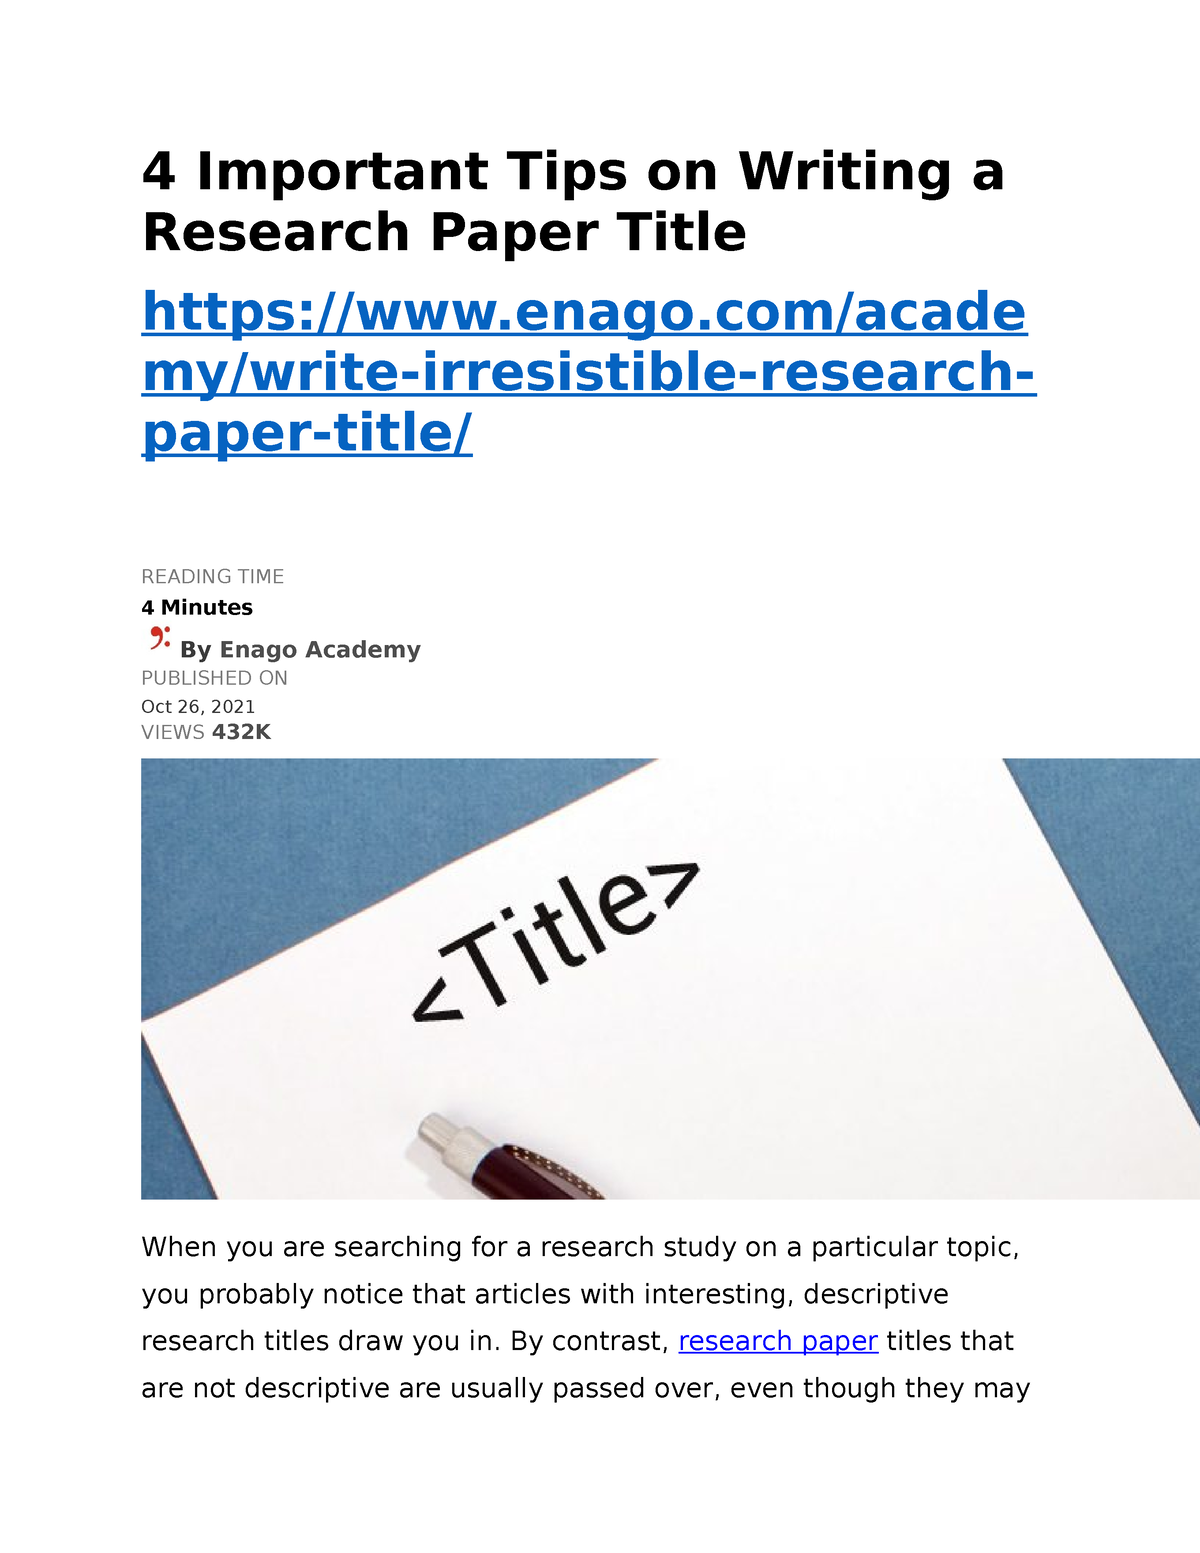 descriptive research titles